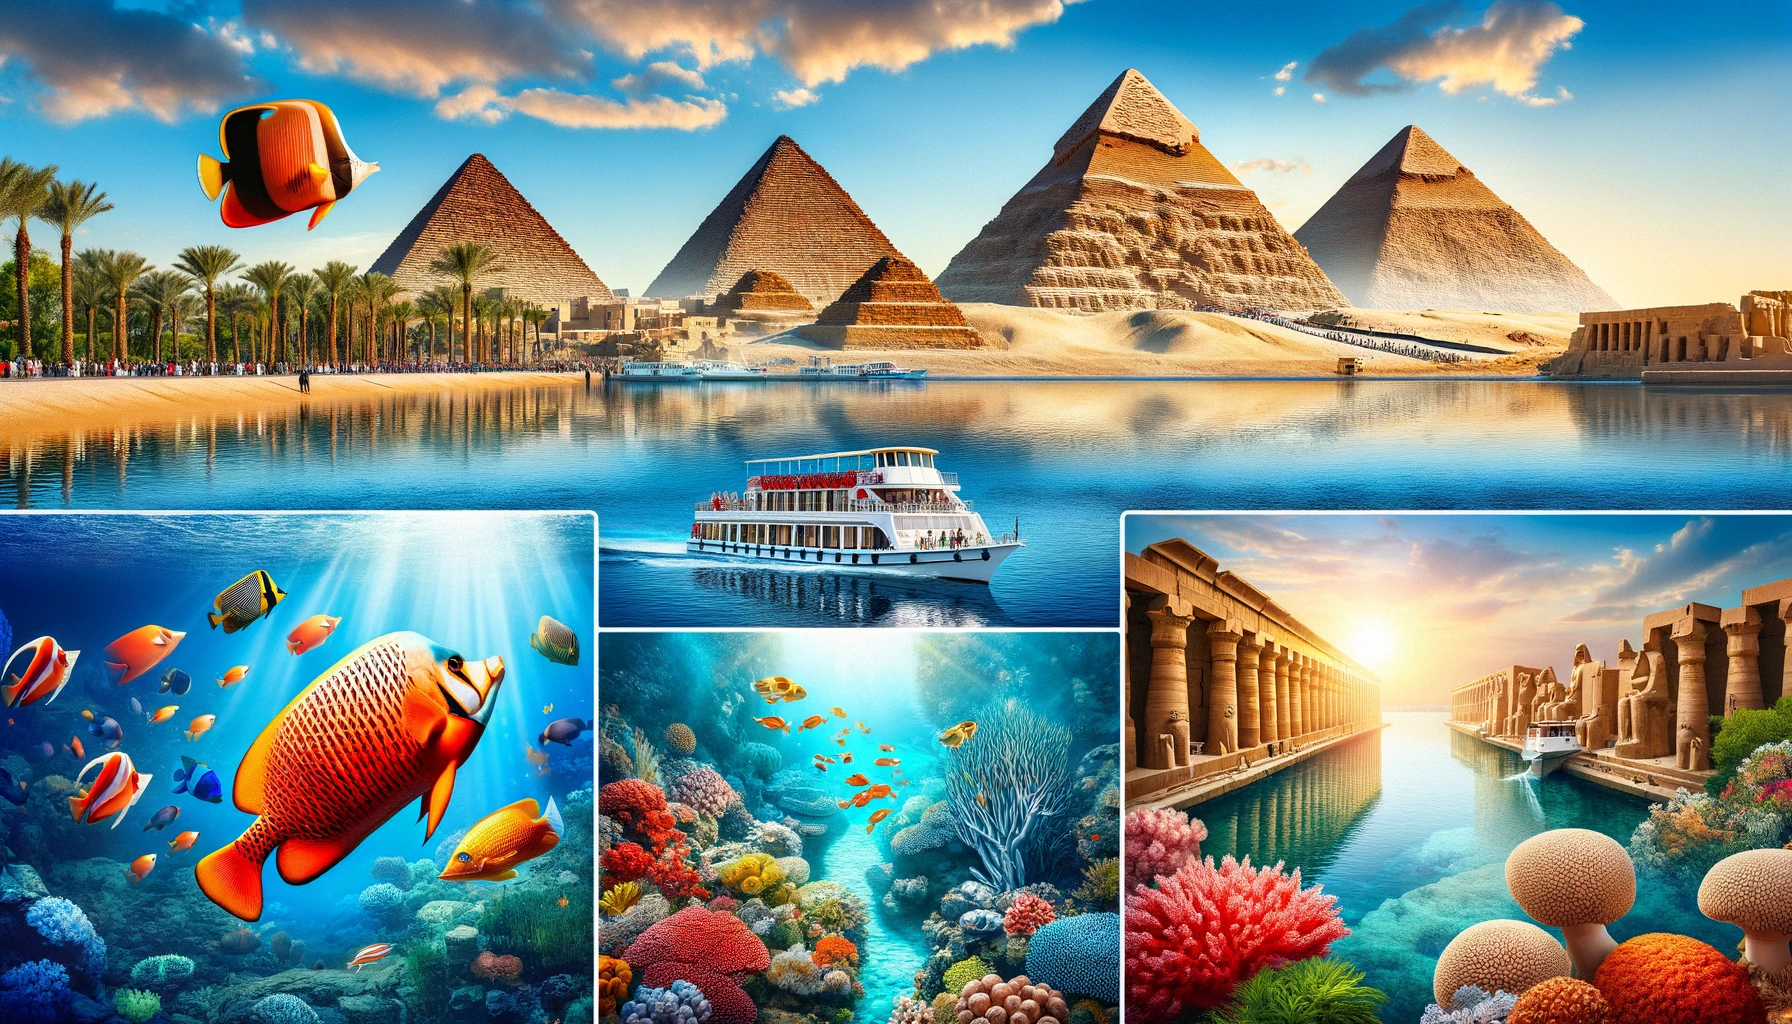 Wielkie Piramidy w Gizie, świątynie w Luksorze, koralowe rafy Morza Czerwonego i rejs po Nilu - atrakcje Egiptu w lutym